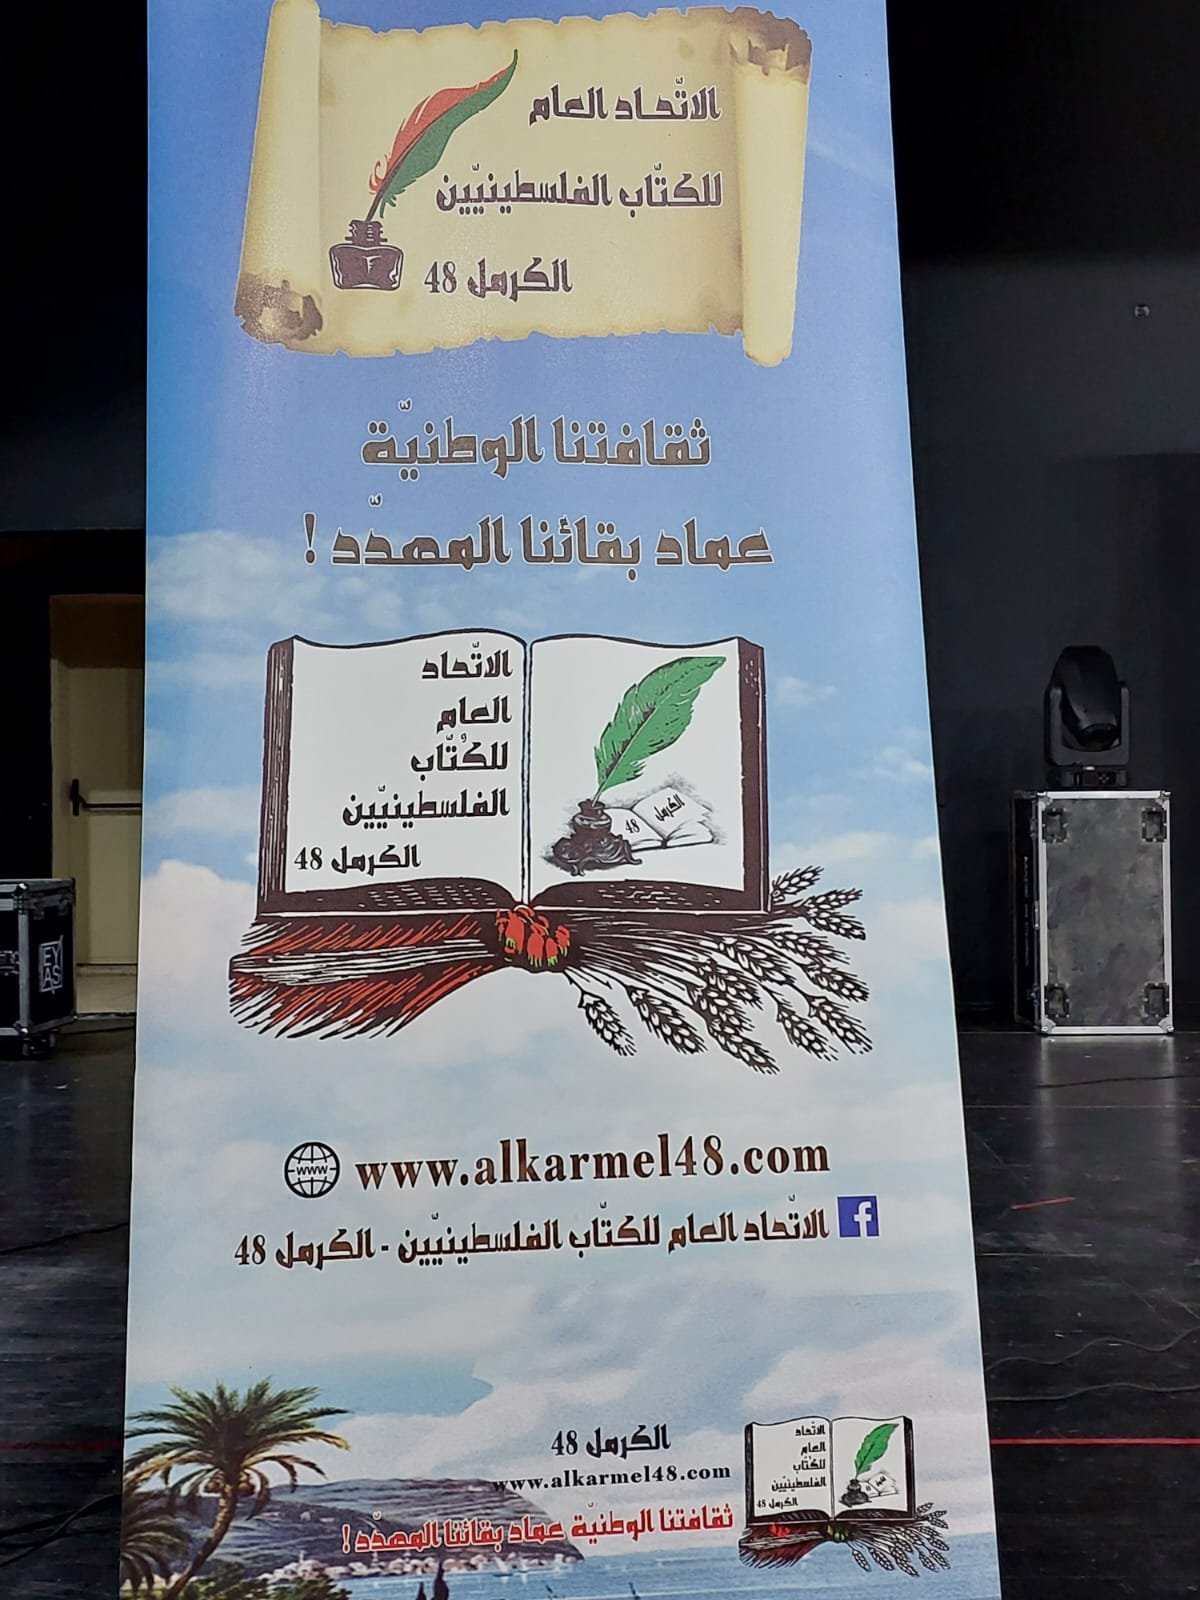 البقيعة تستضيف مهرجان أيار الثقافي للانتماء والبقاء- بمبادرة اتحاد الكتاب الفلسطينيين الكرمل 48-2